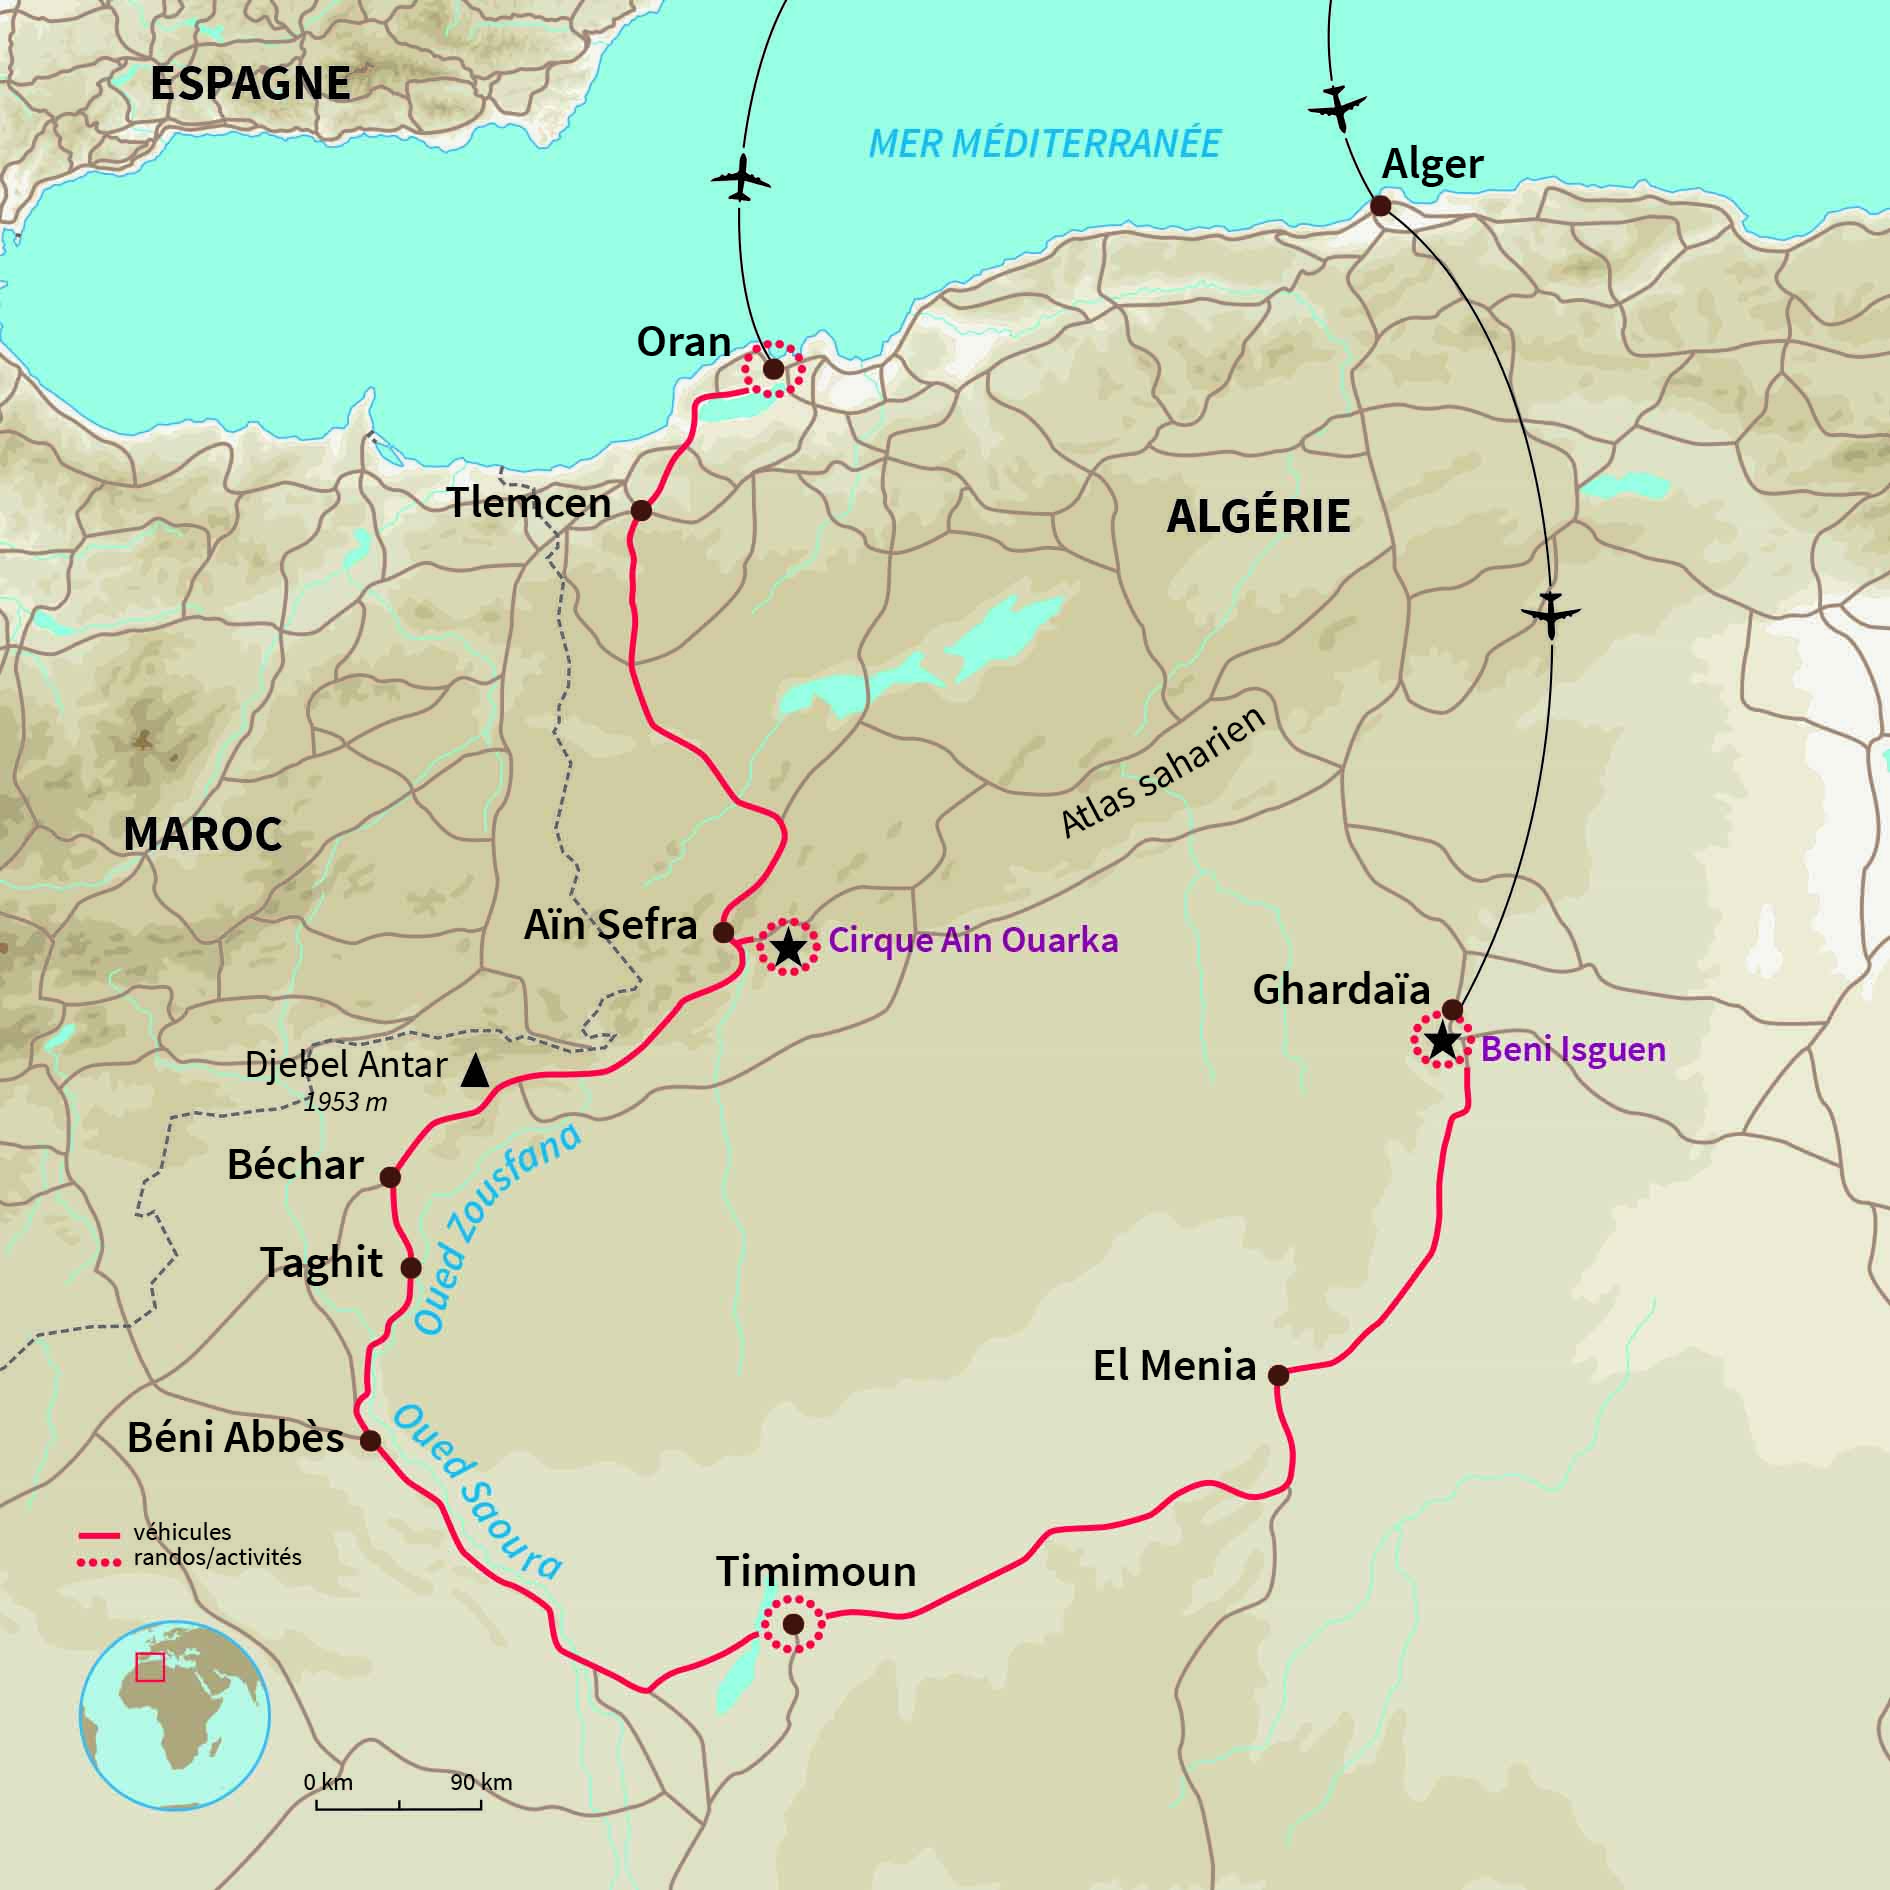 Le souk: Cartes topographiques des Etats-Unis